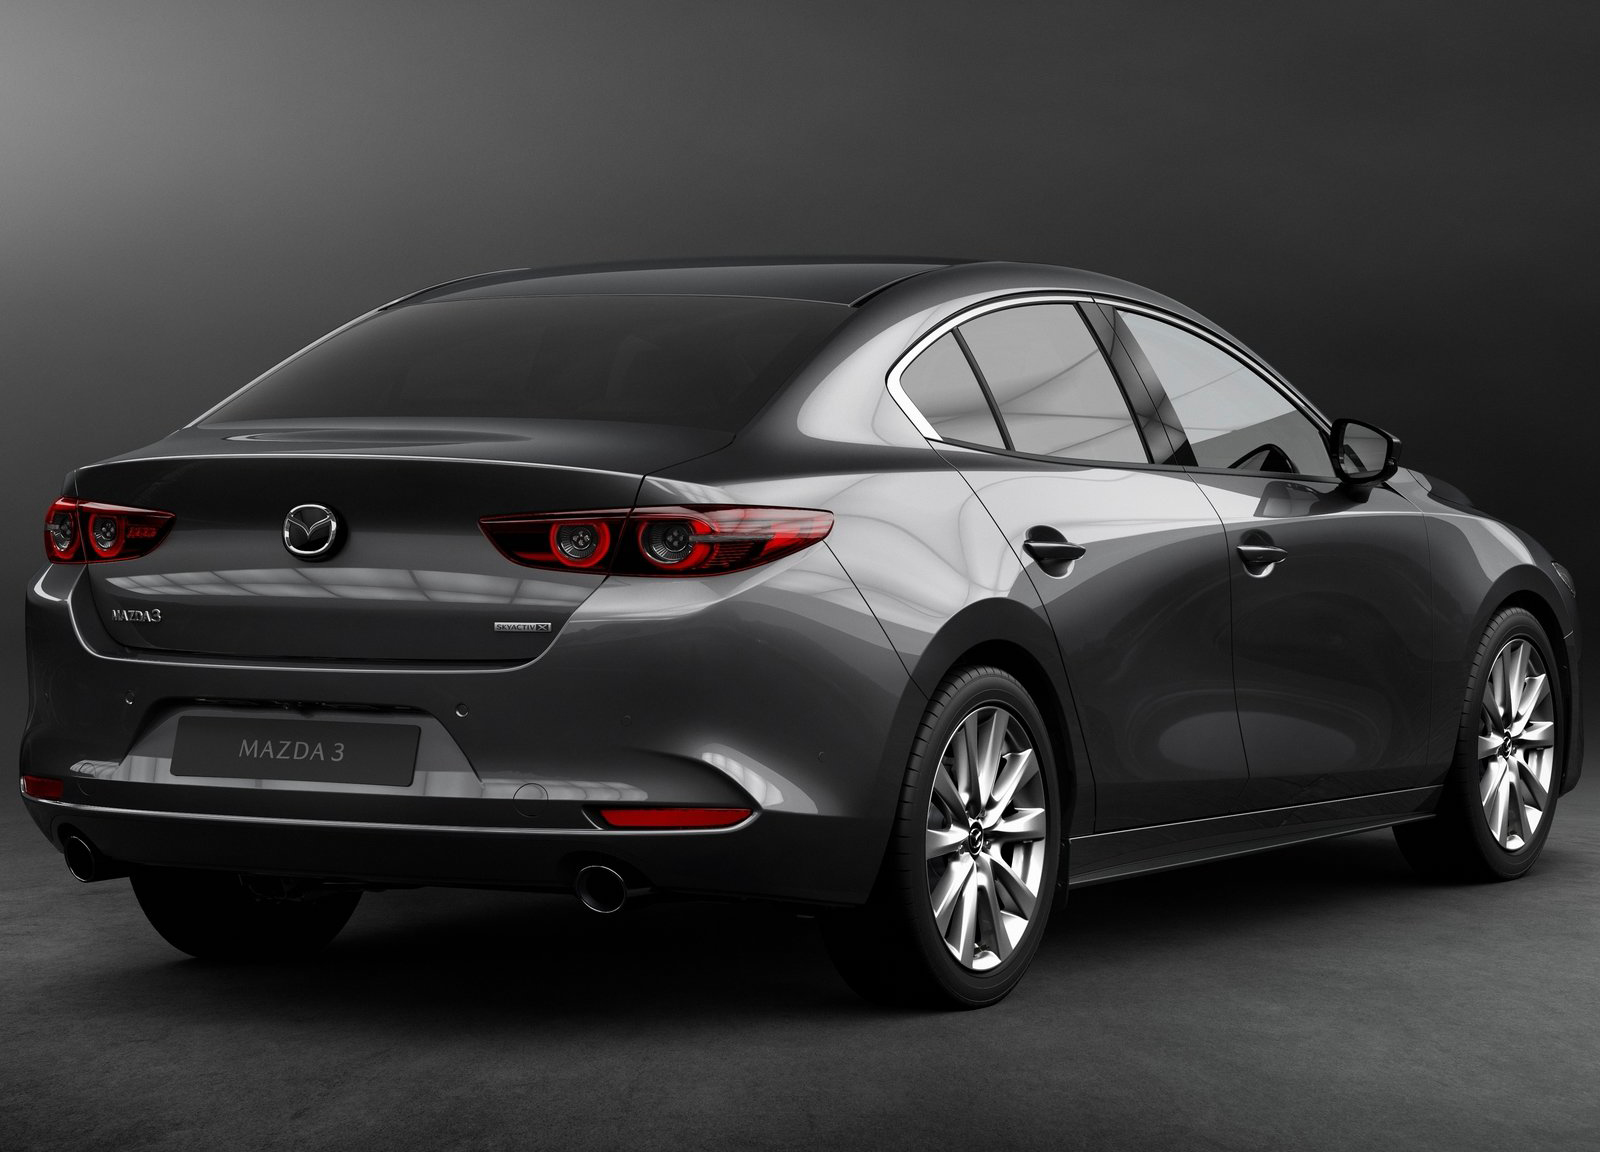 Galería Revista de coches, - Mazda 3 Sedan 2019 - Imagen